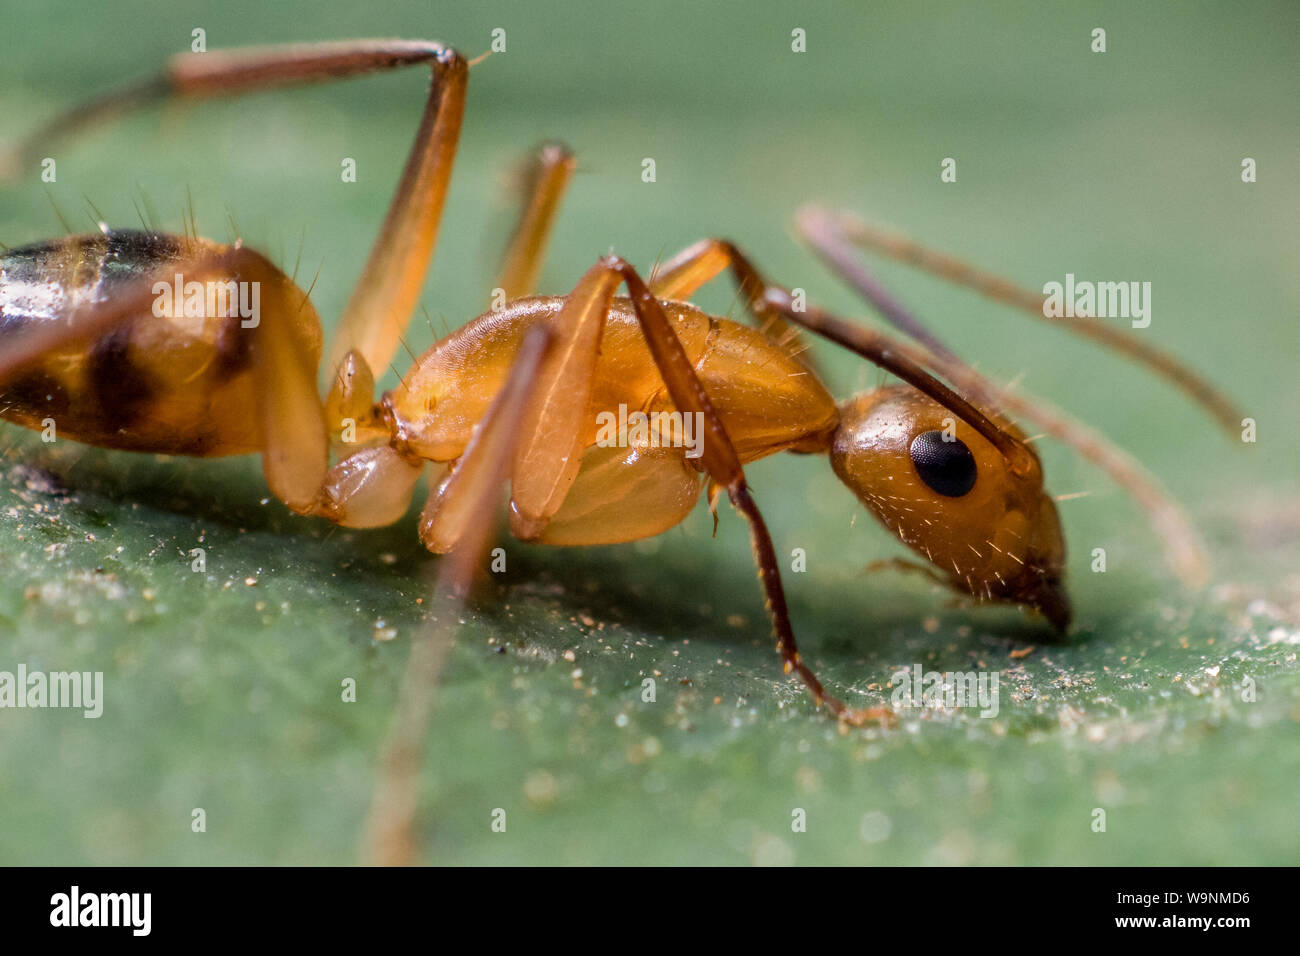 Close-up di un carpernter ant che mostra l'insetto in dettagli, trovato in un giardino tropicale in Brasile Foto Stock